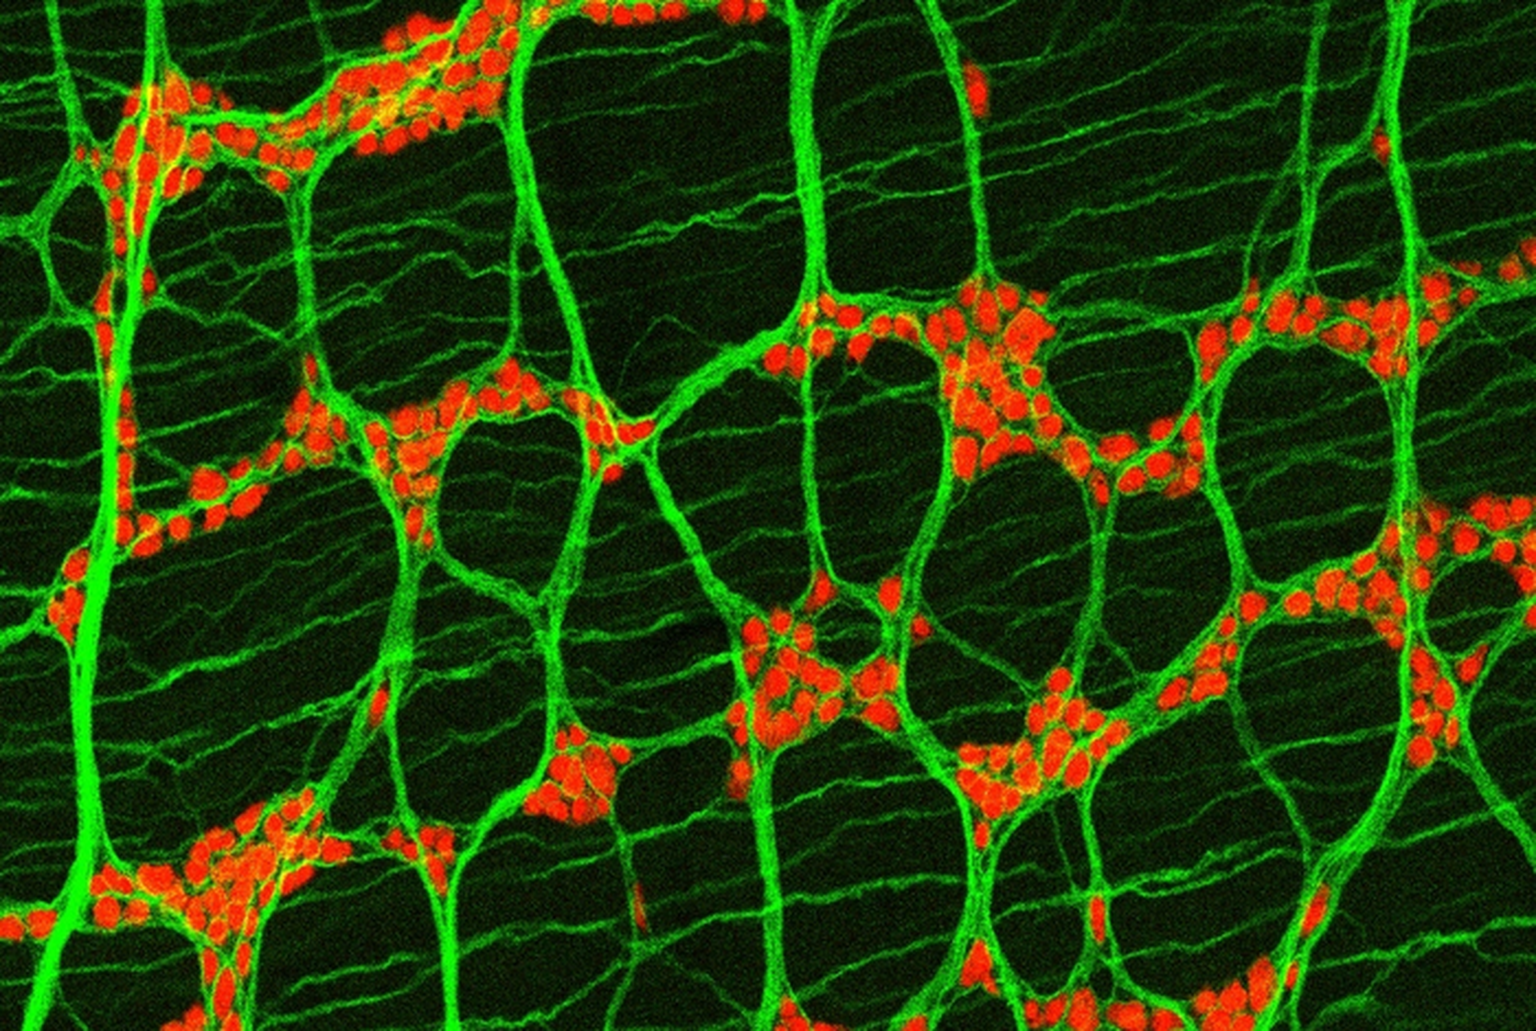 Pildil on näha neuroneid (punased) hiire käärsoole silelihaste kihis (rohelised).